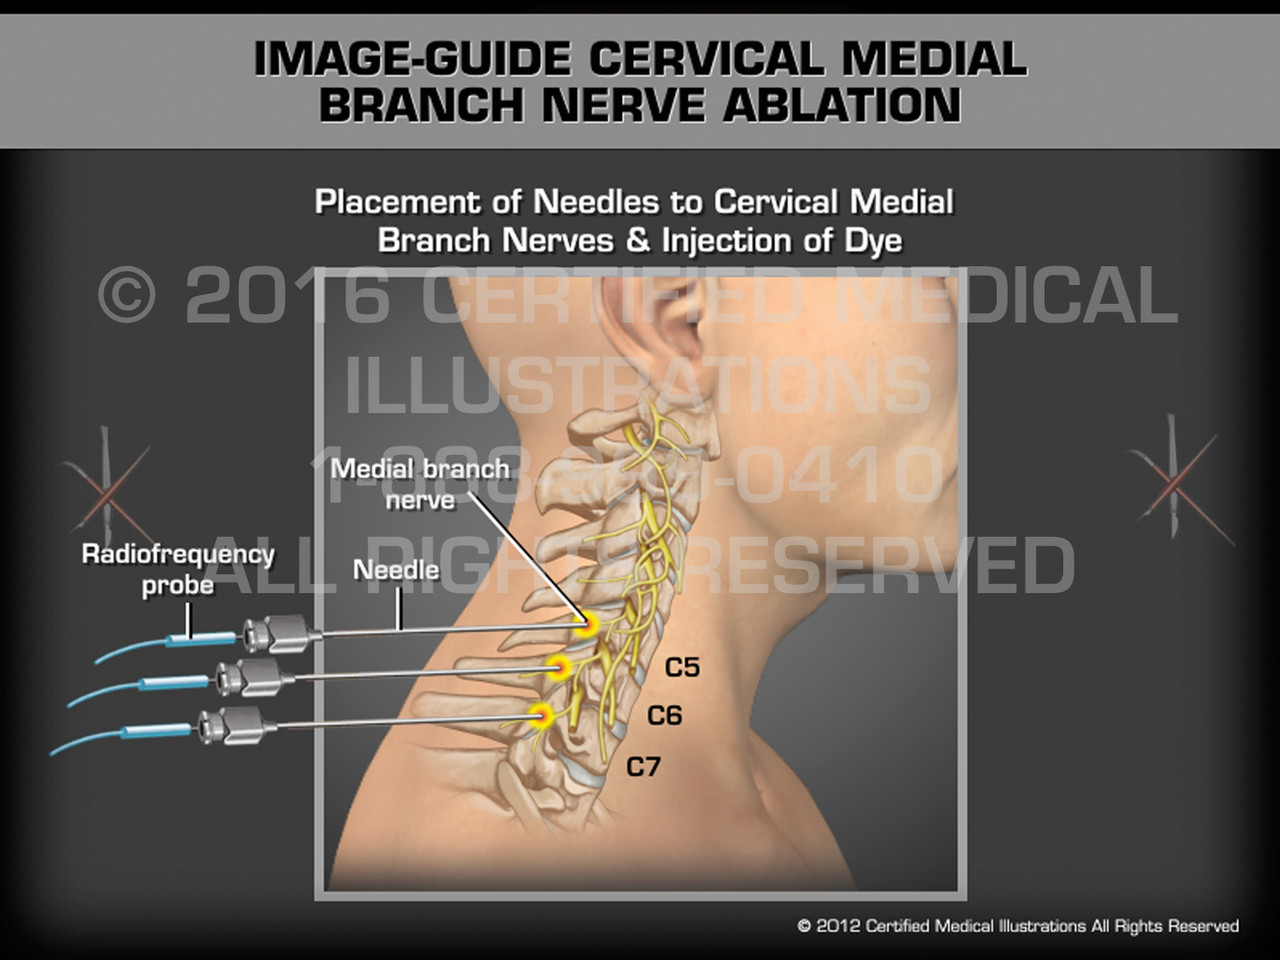 Image-Guide Cervical Medial Branch Nerve Ablation - Medical Animation